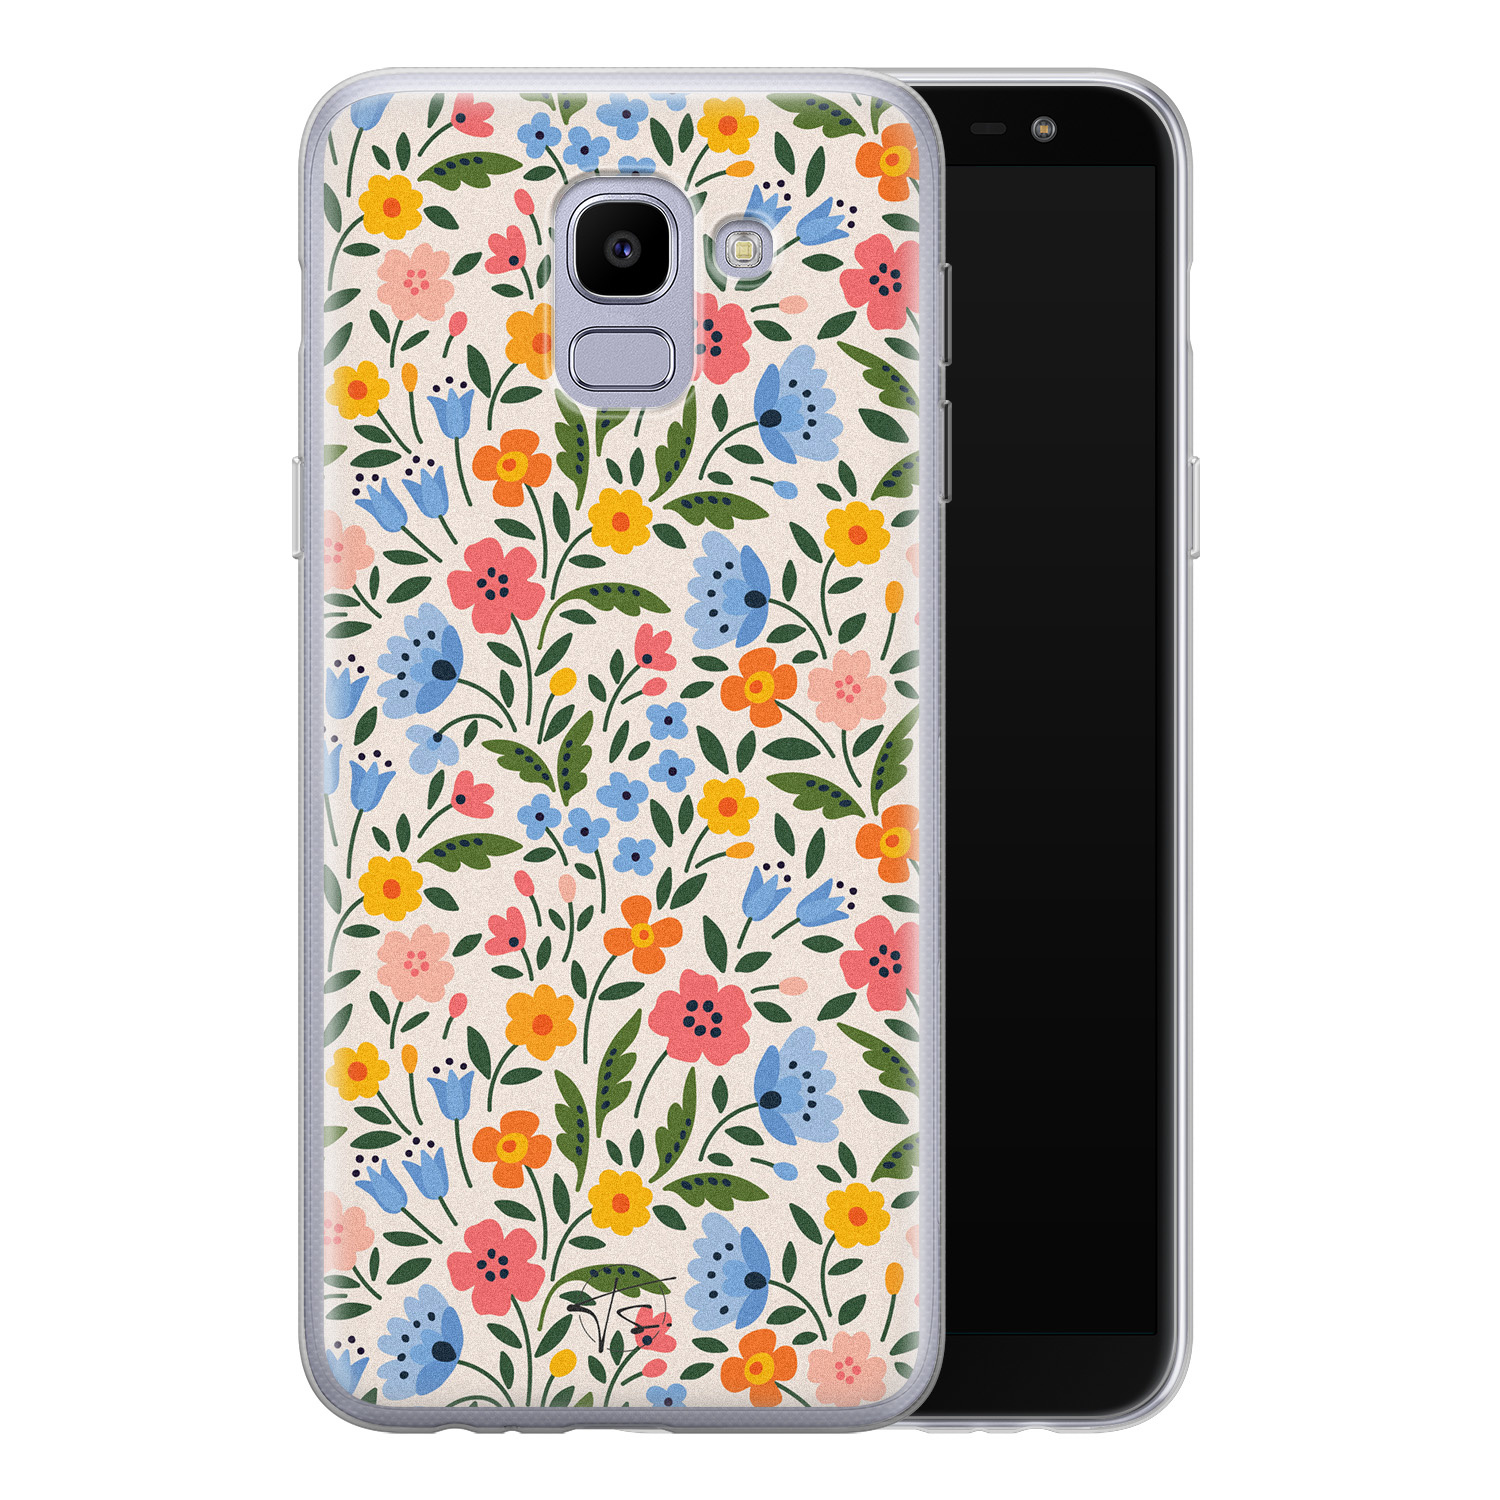 Telefoonhoesje Store Samsung Galaxy J6 2018 siliconen hoesje - Romantische bloemen